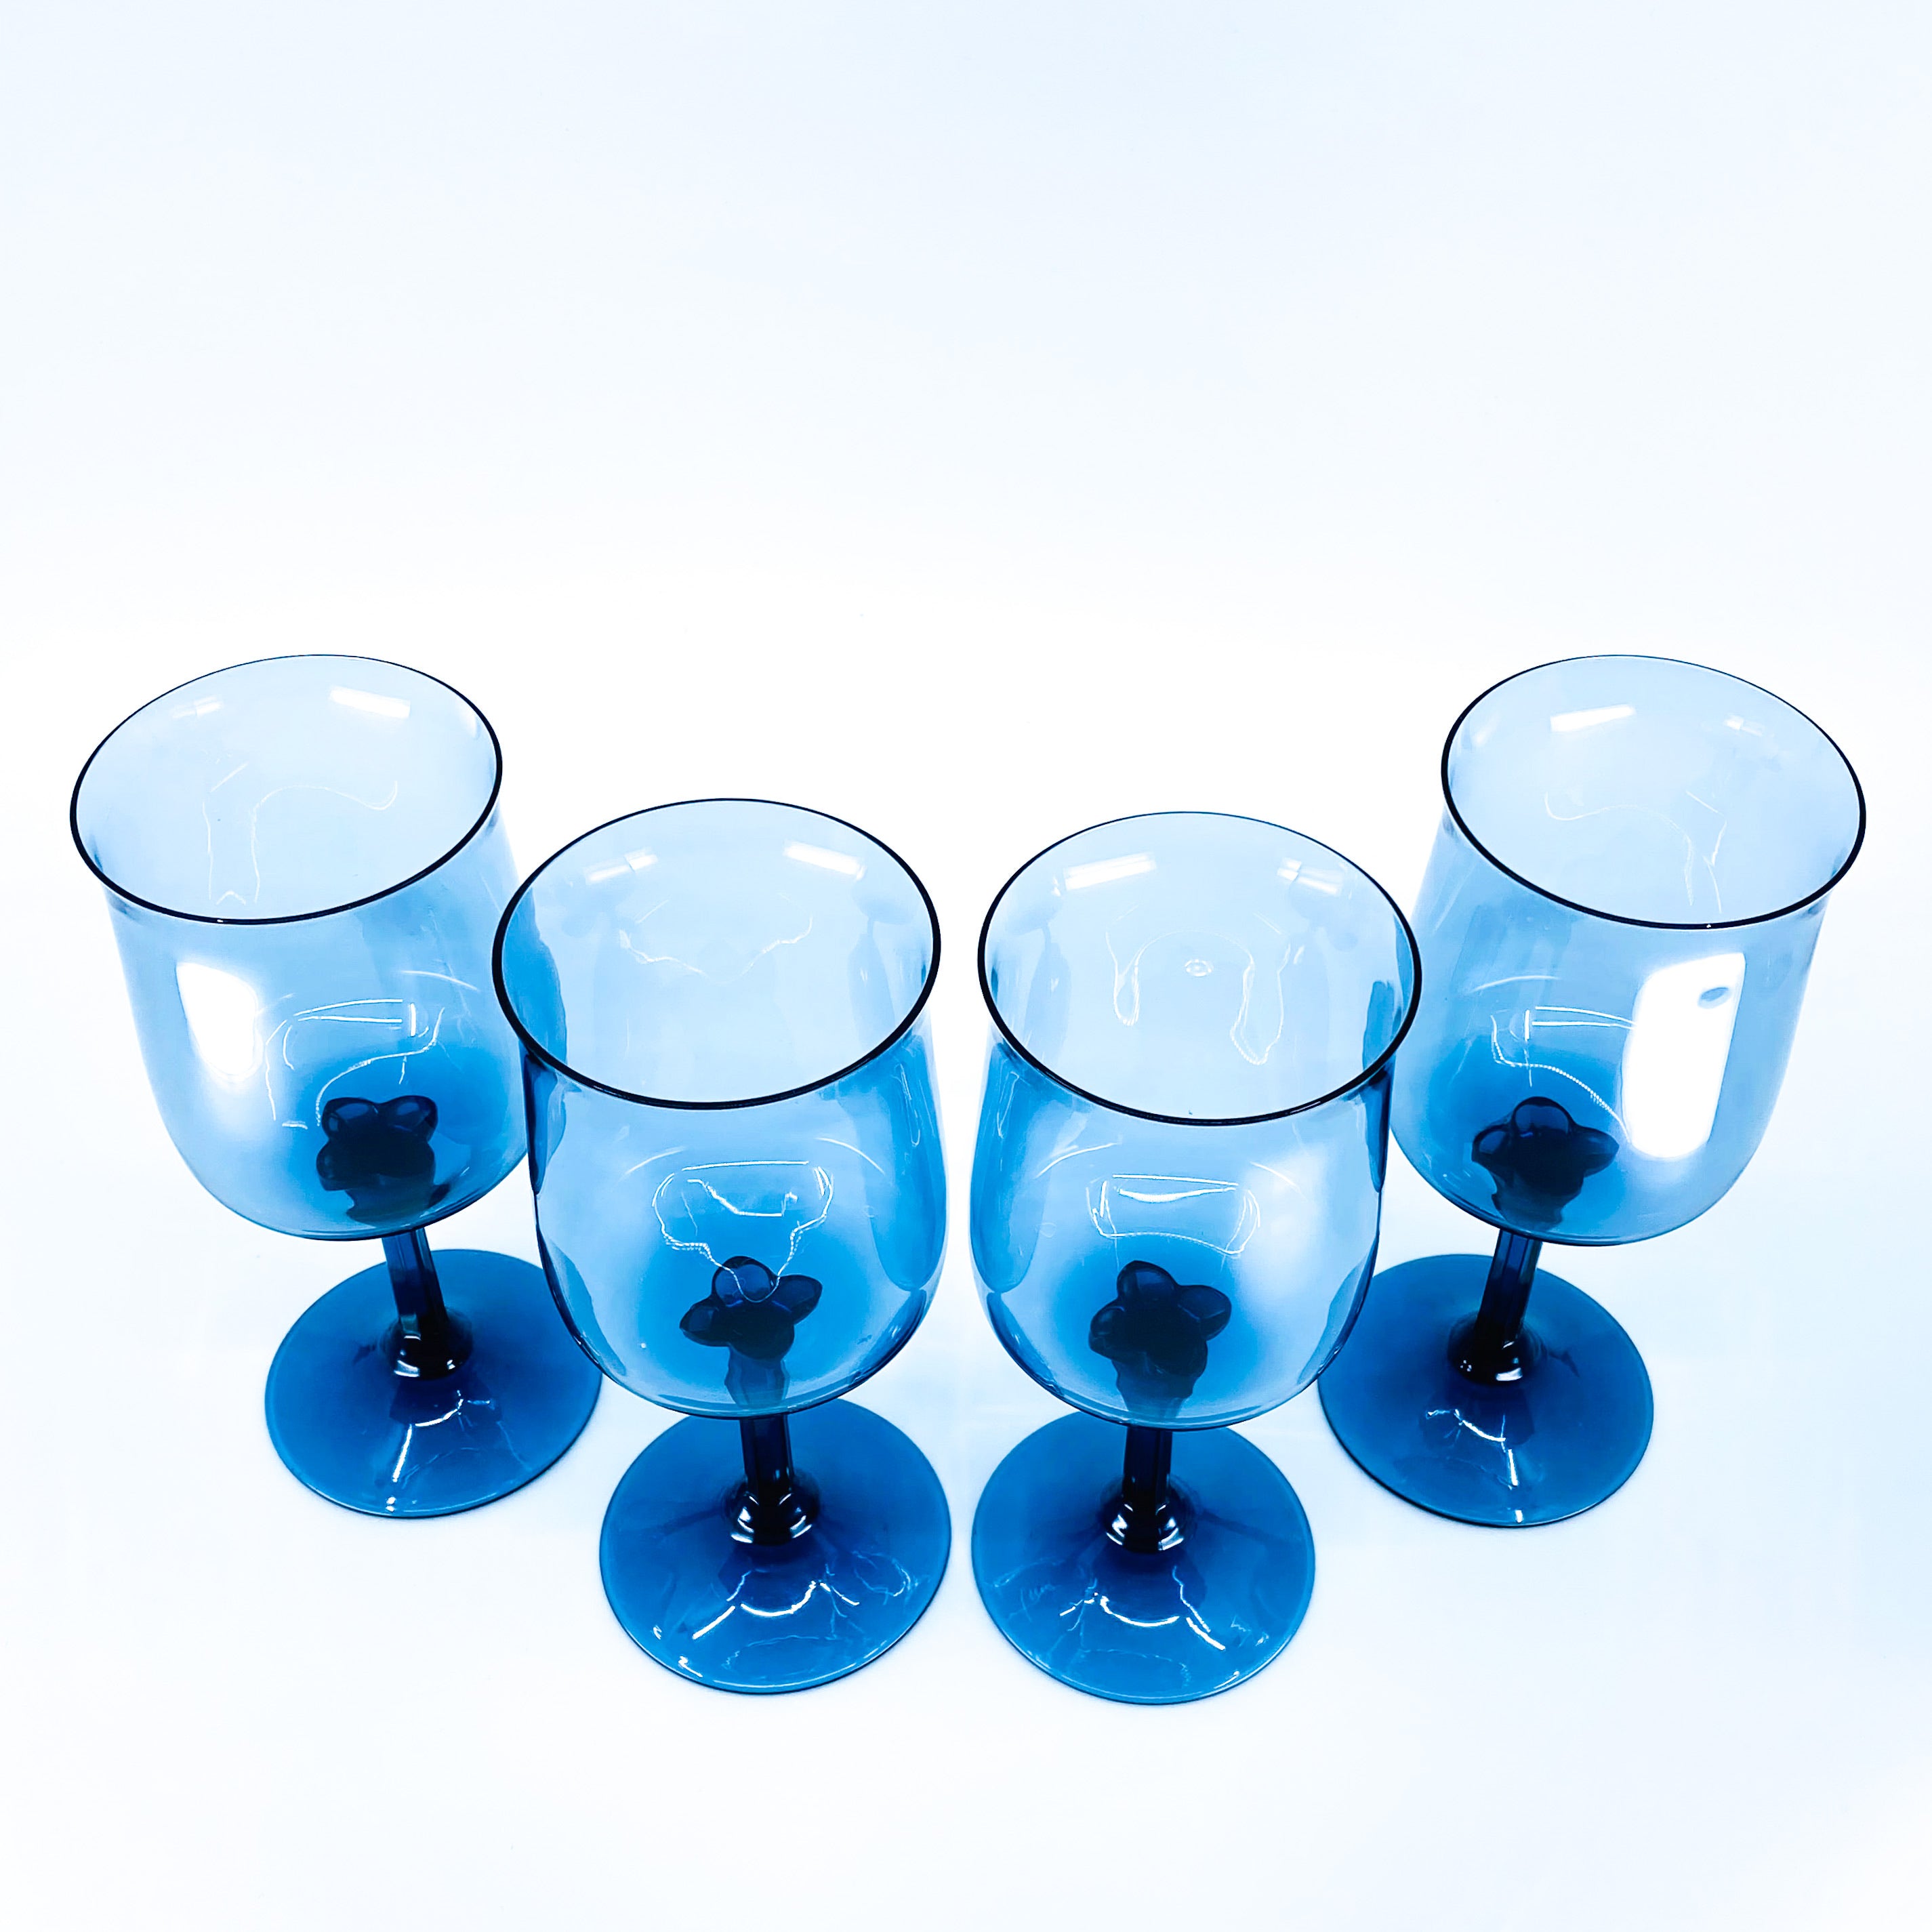 Lenox Blue Mist Tulip Shaped Wine Glasses, Set of 4